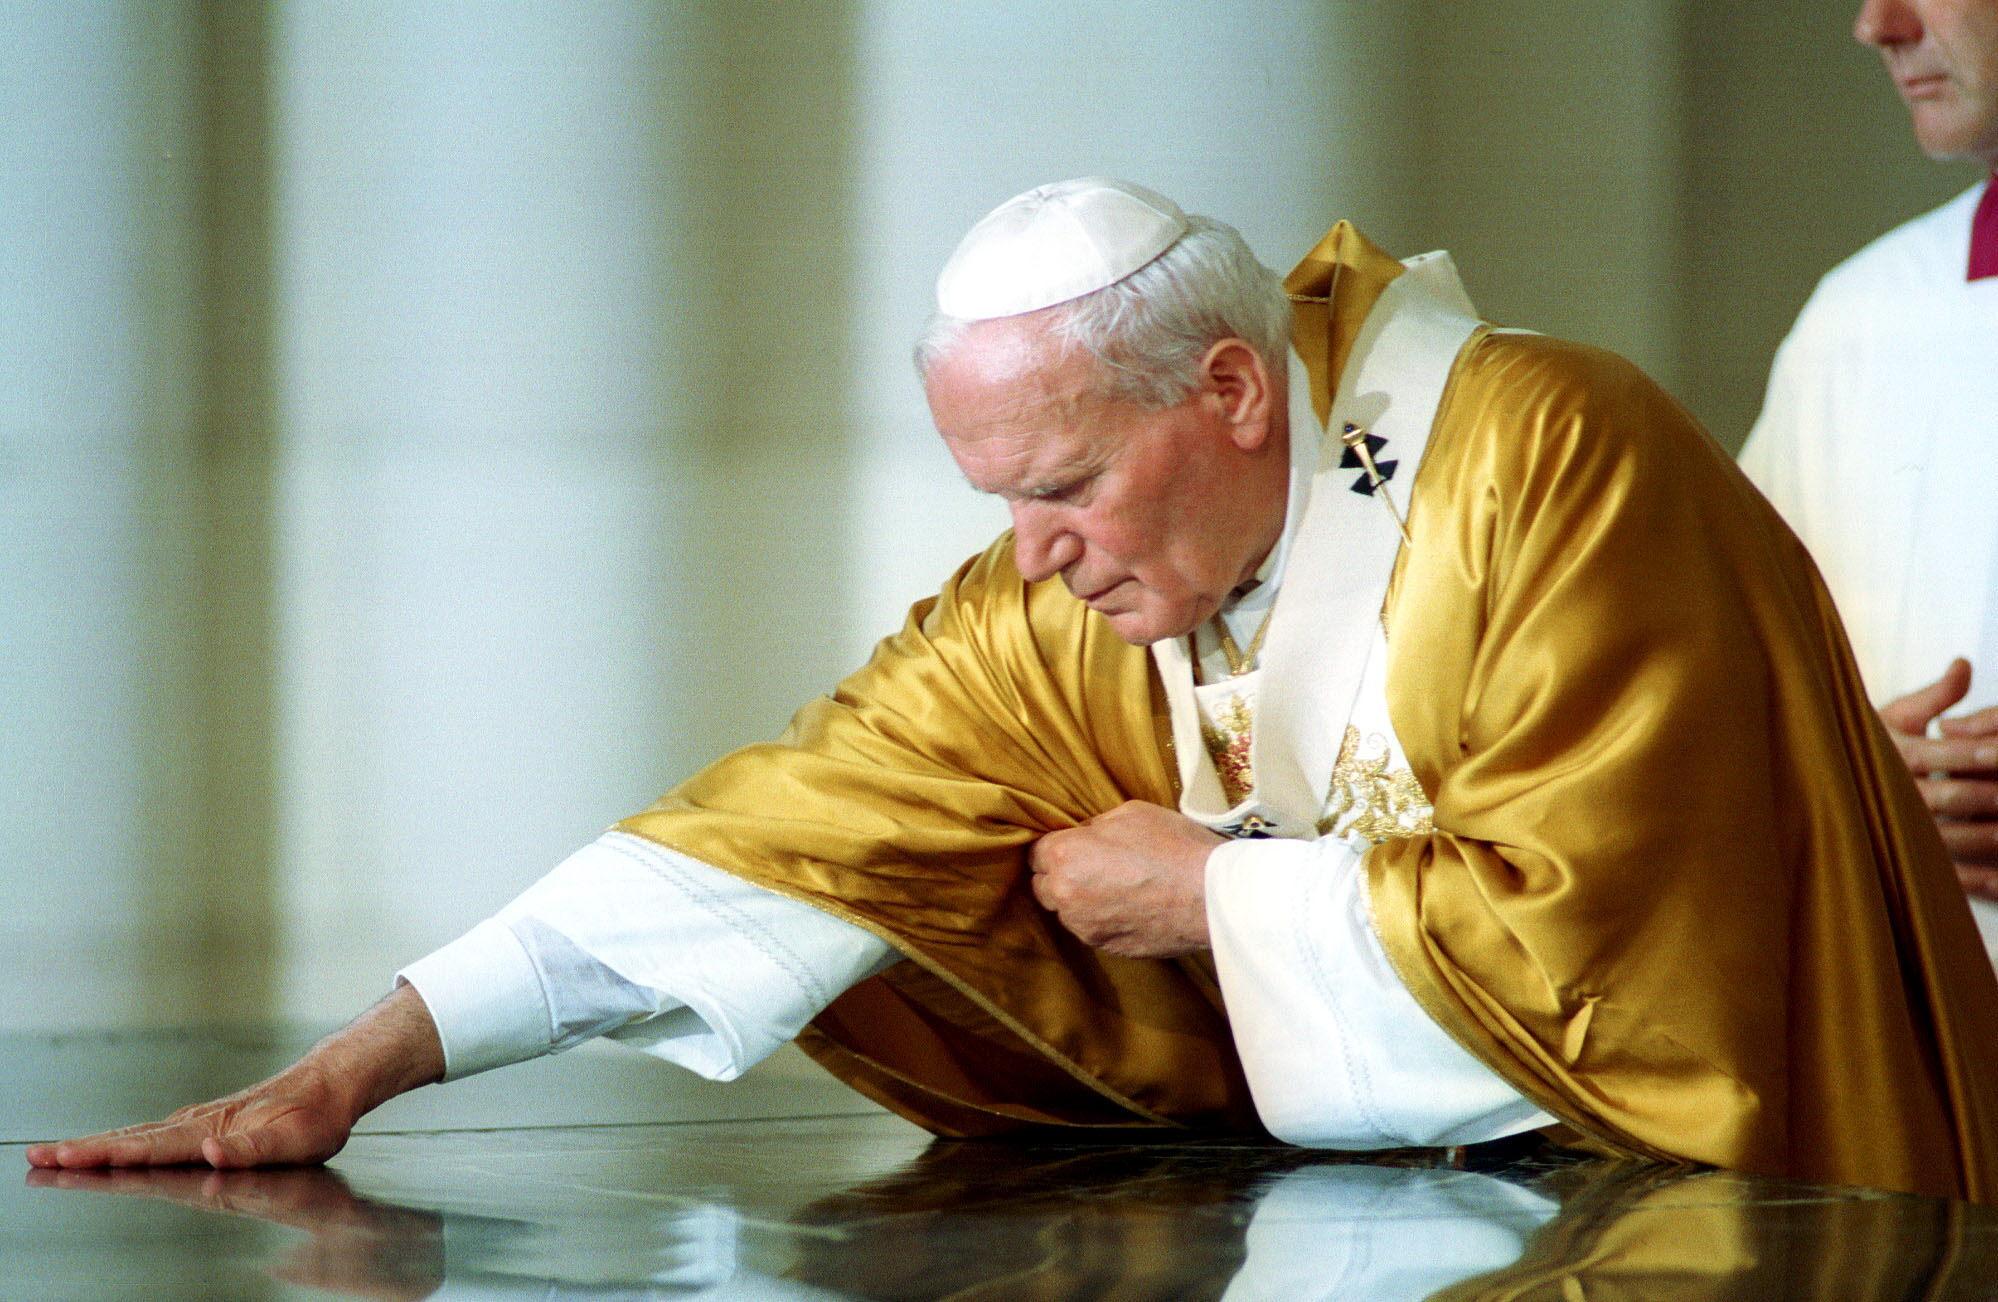 Foto de archivo del papa Juan Pablo II, soberano de la Ciudad del Vaticano desde 1978 hasta su muerte en 2005 (EFE/Barriopedro)